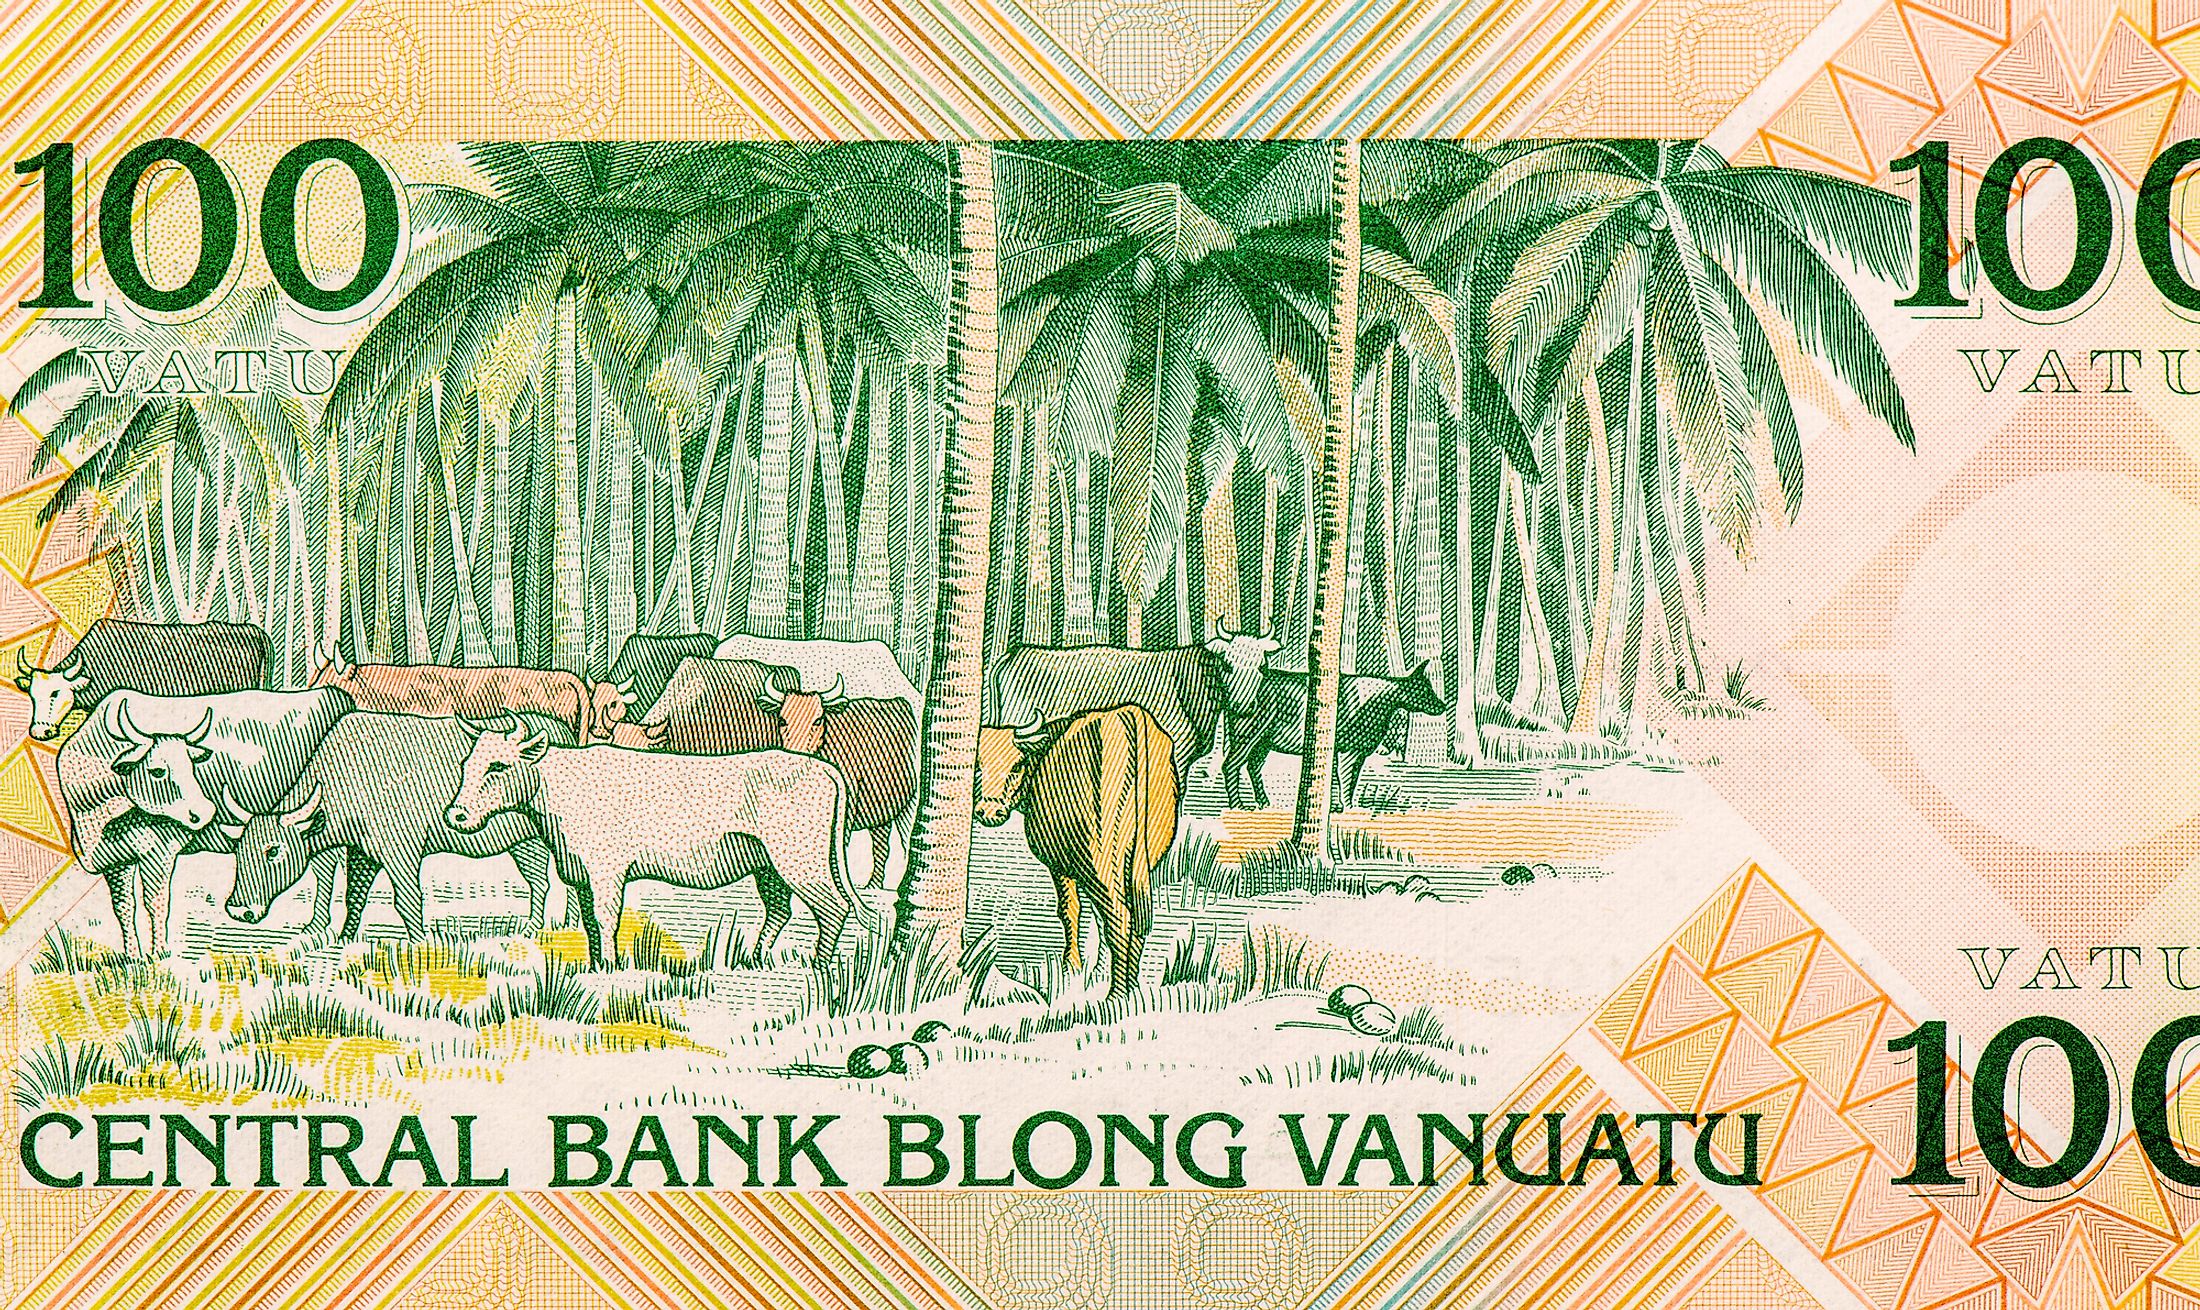 travel money card vanuatu